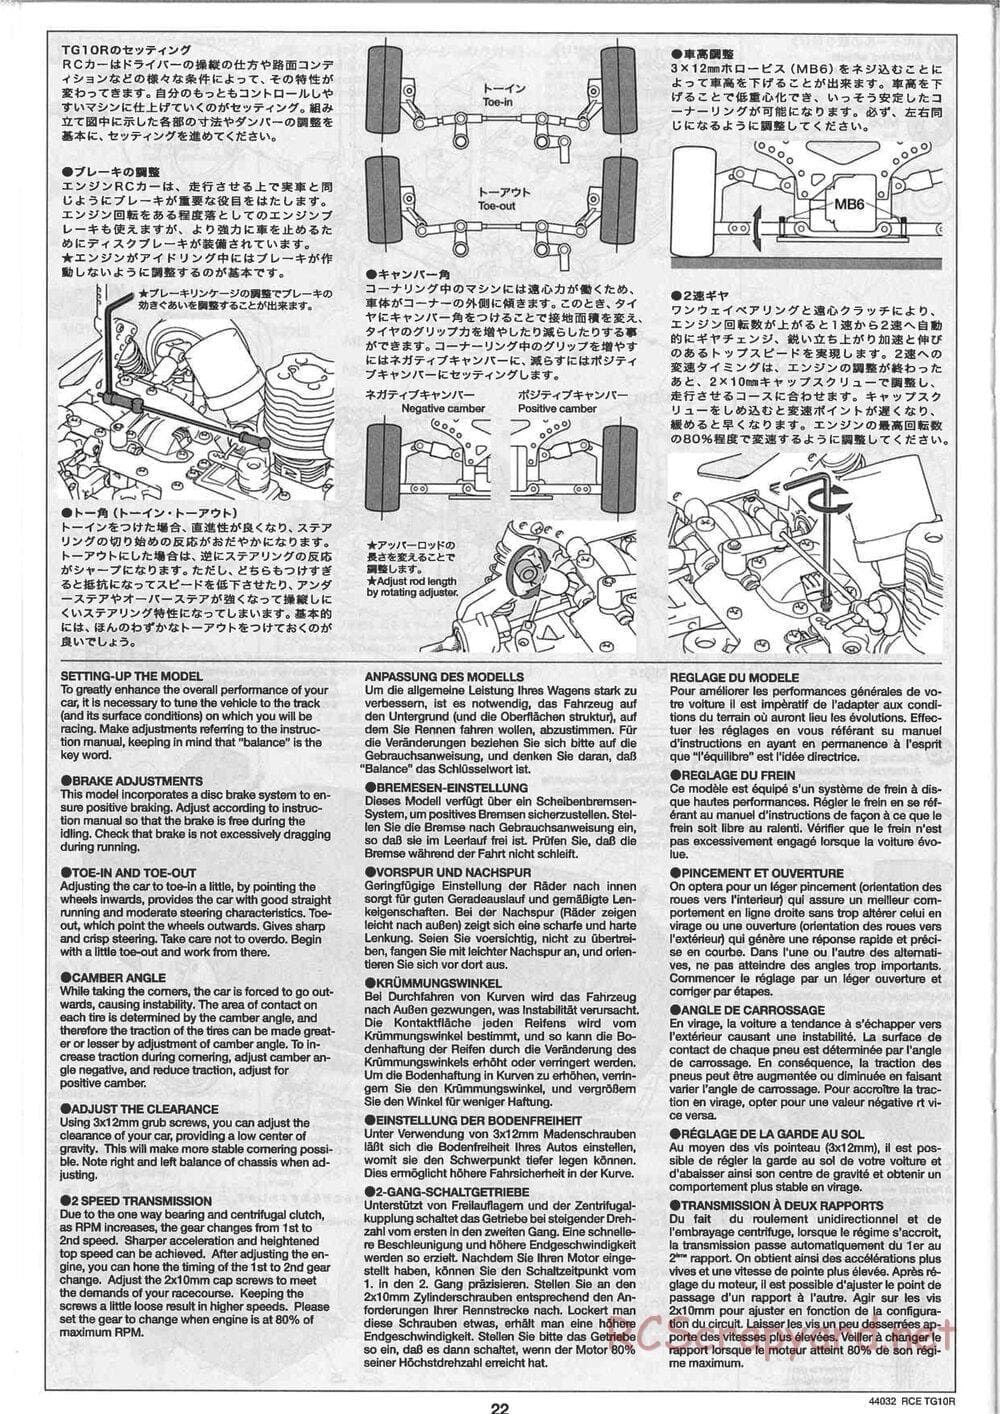 Tamiya - TG10R Chassis - Manual - Page 22